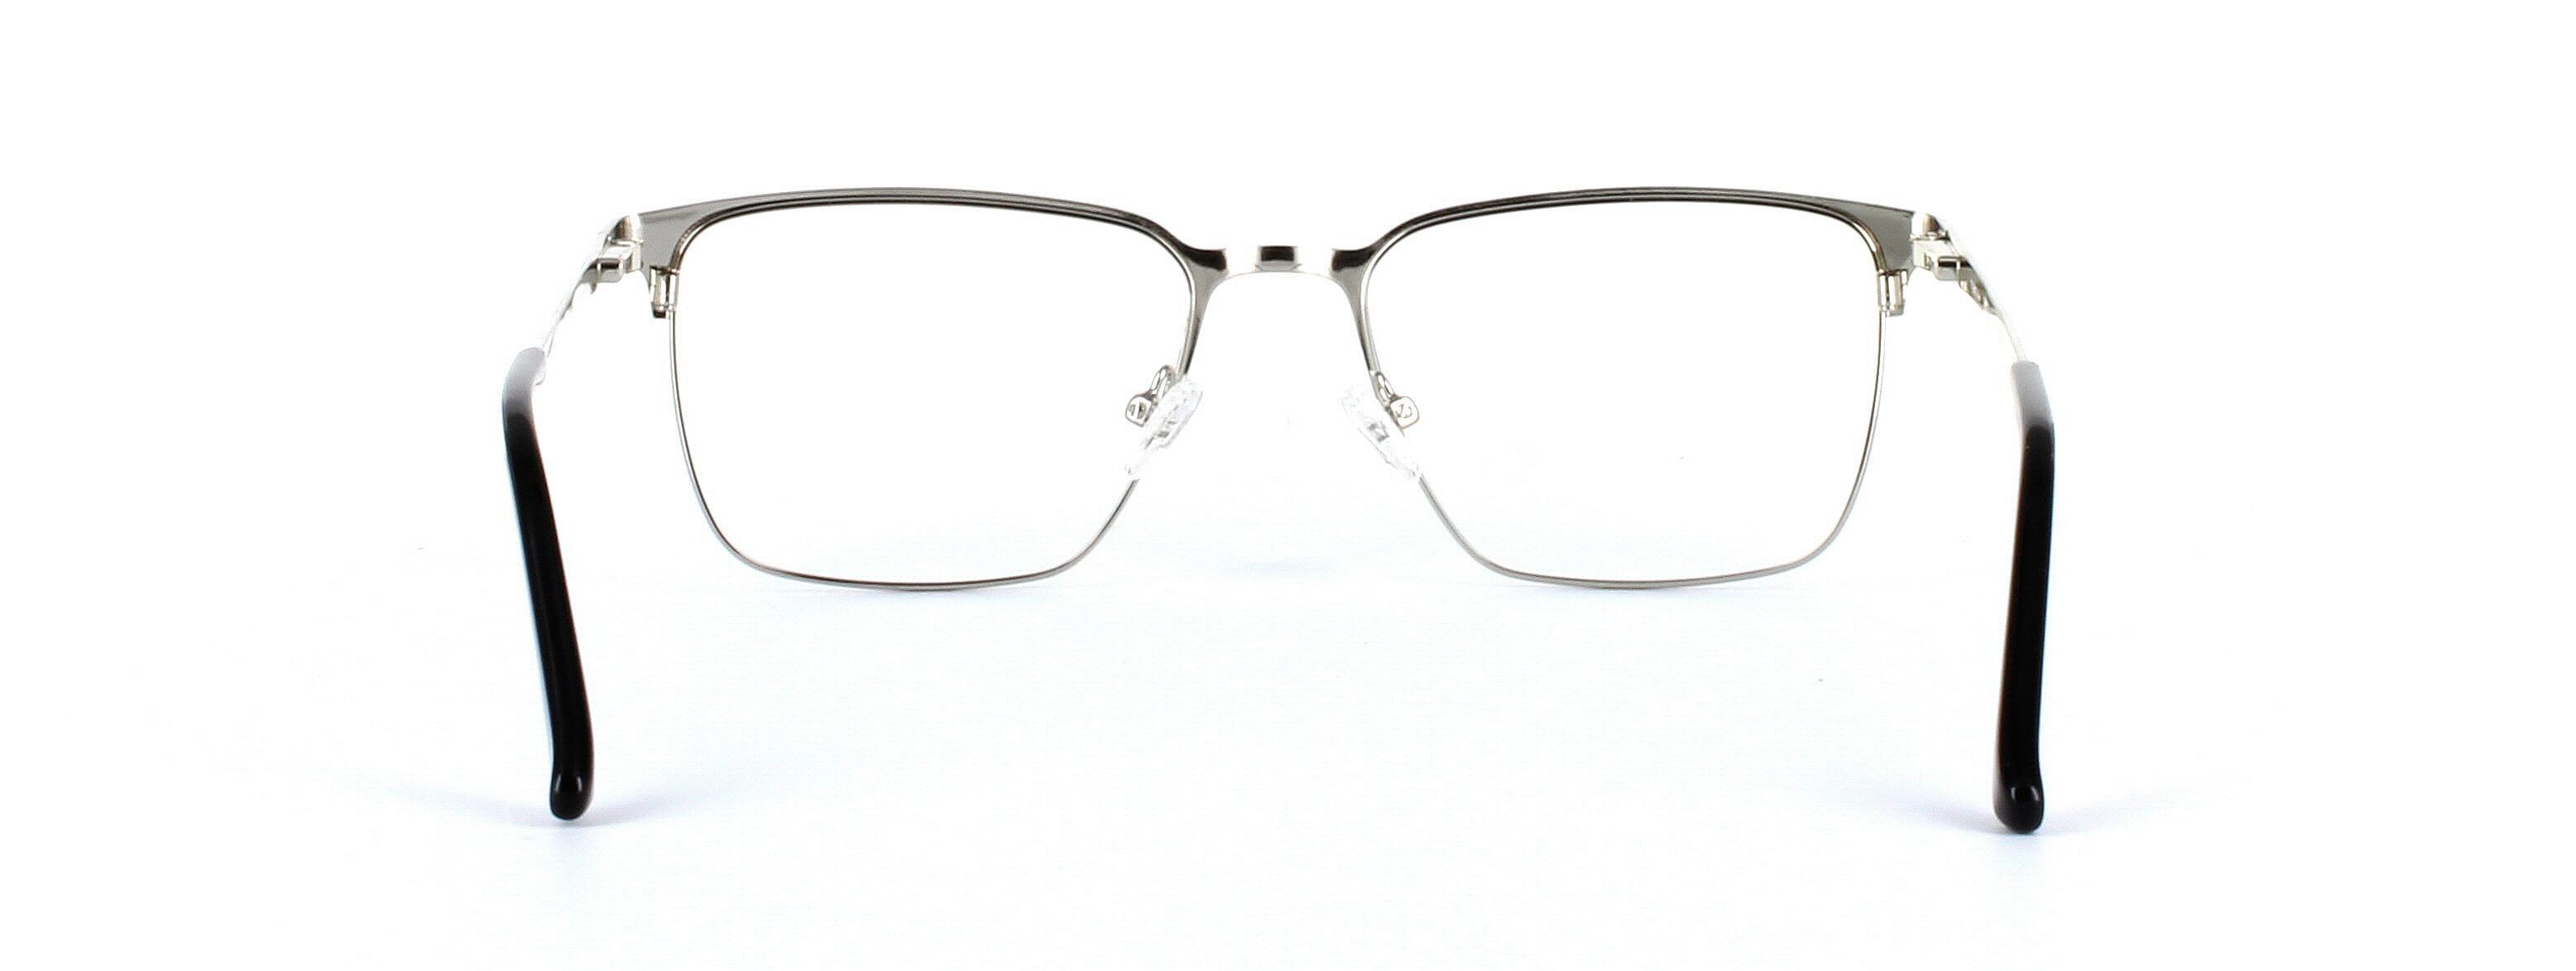 Larkin Matt Black Full Rim Metal Glasses - Image View 3